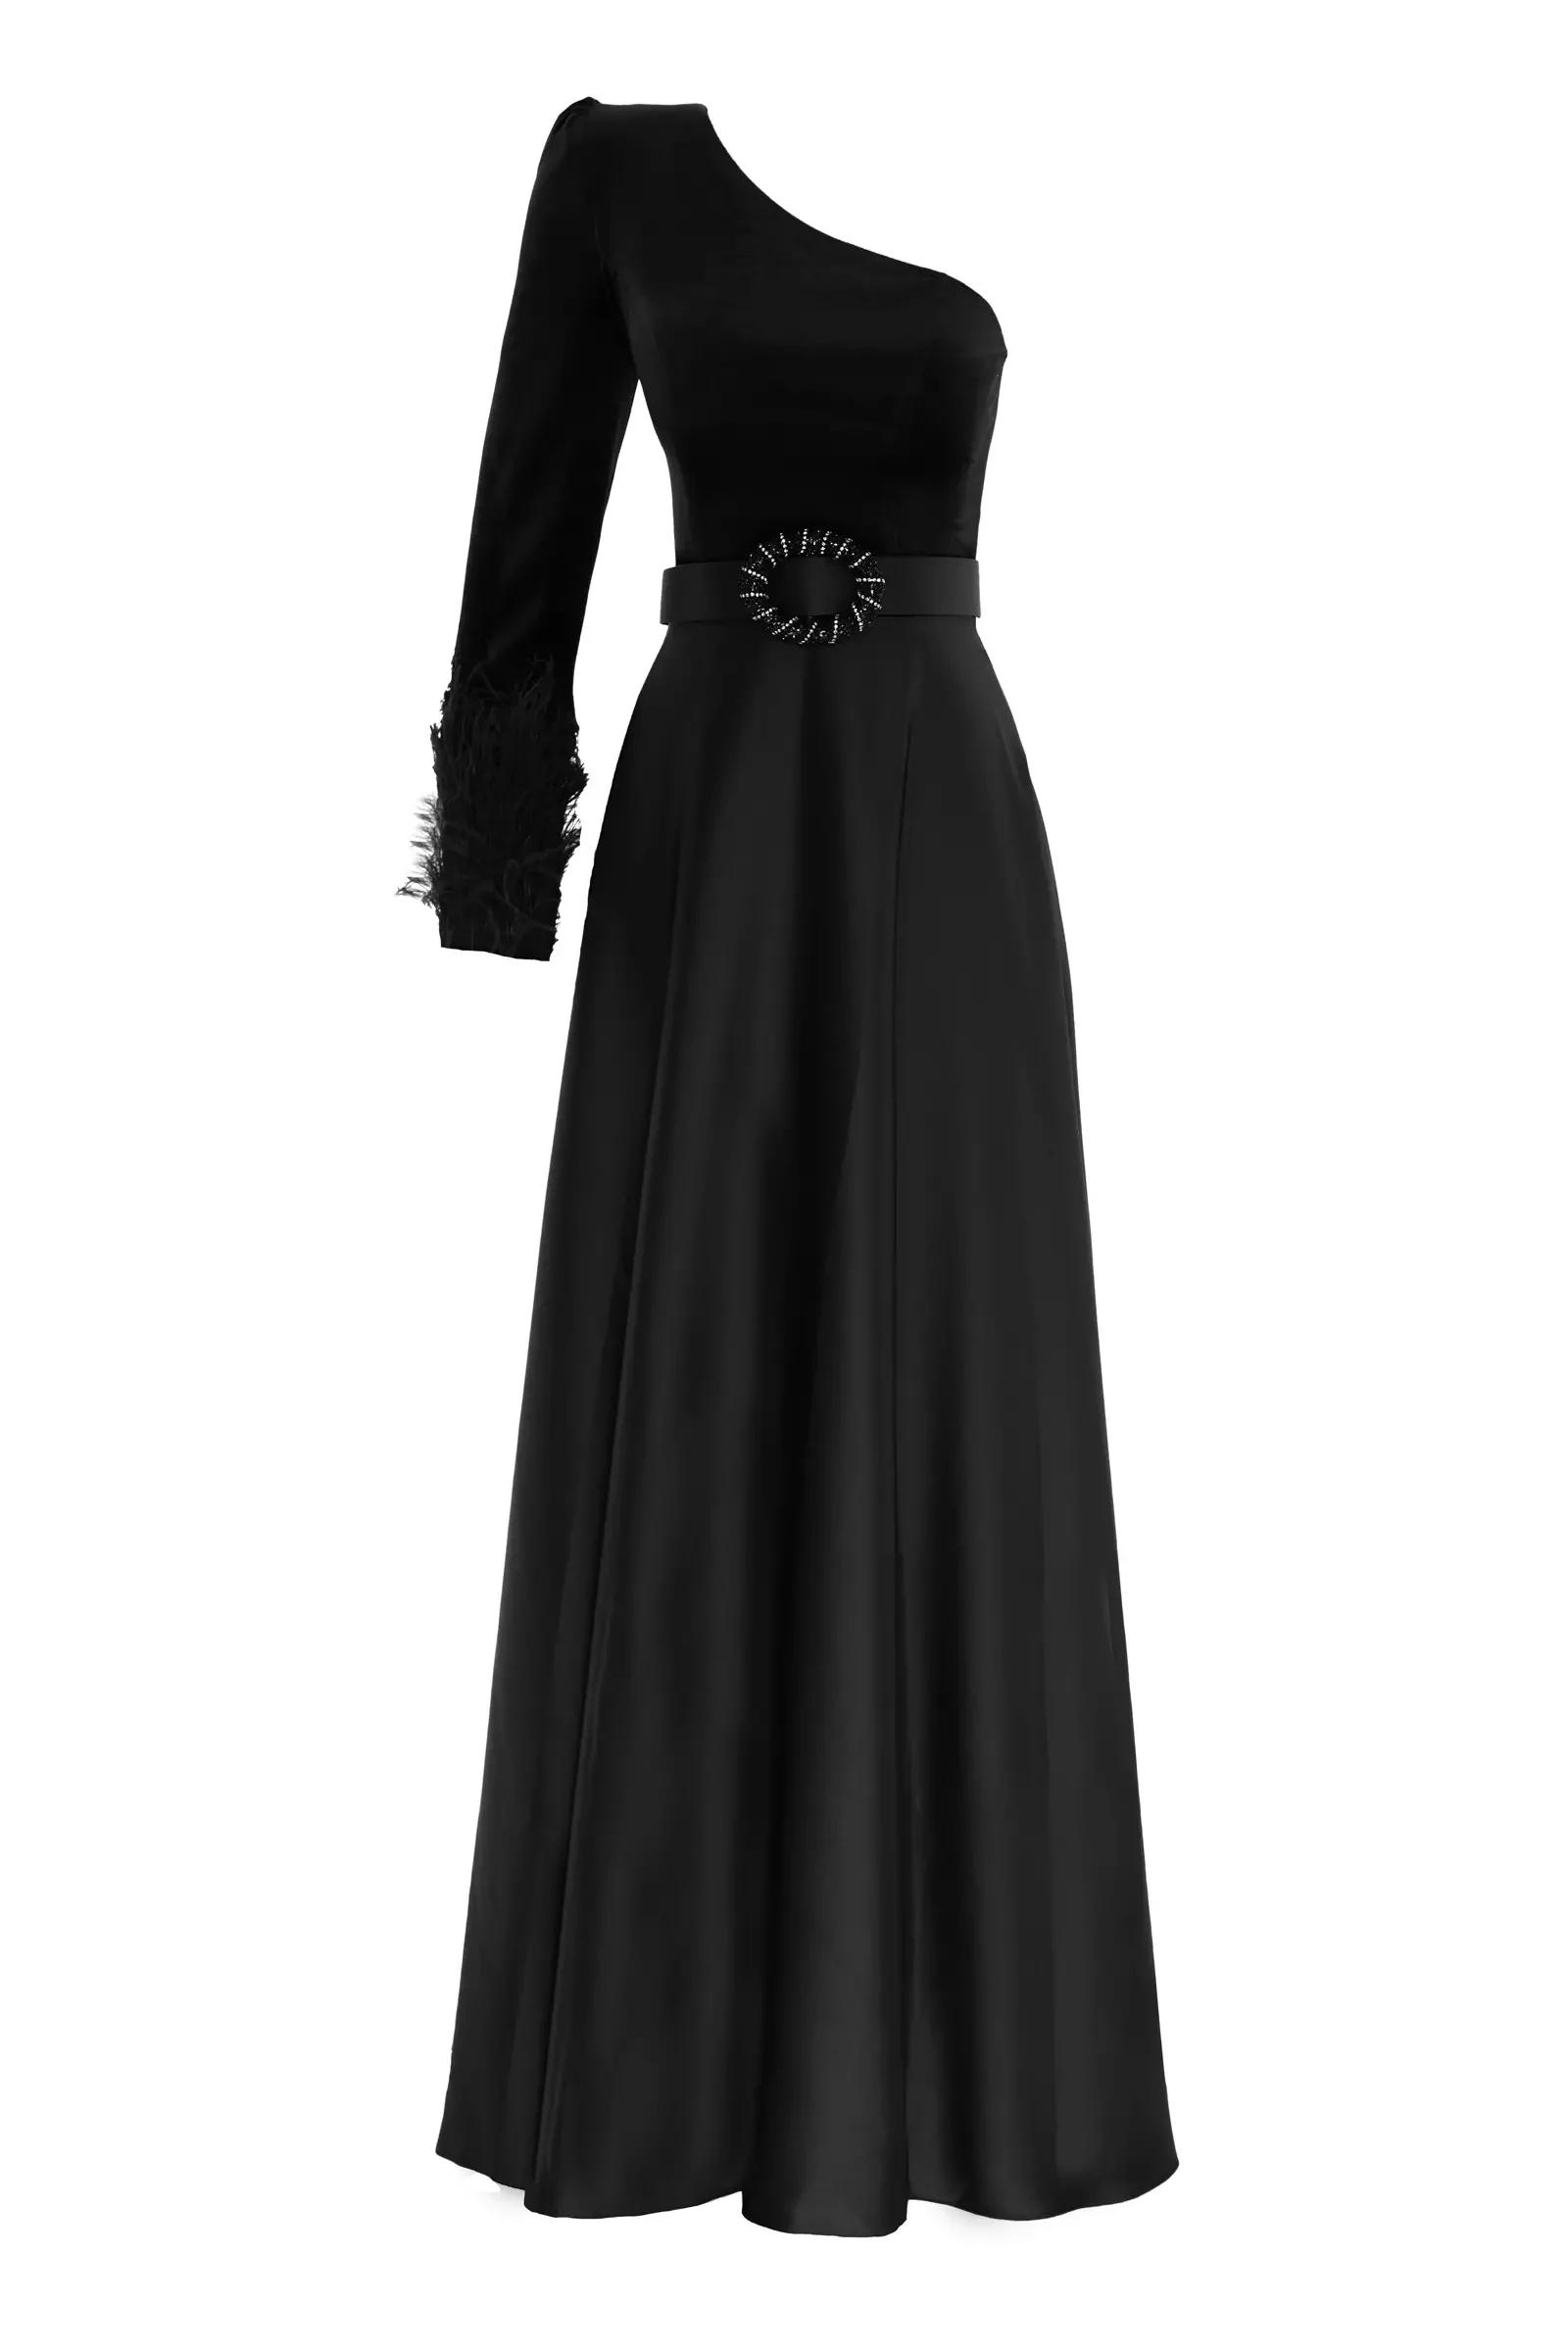 Black velvet one arm maxi dress